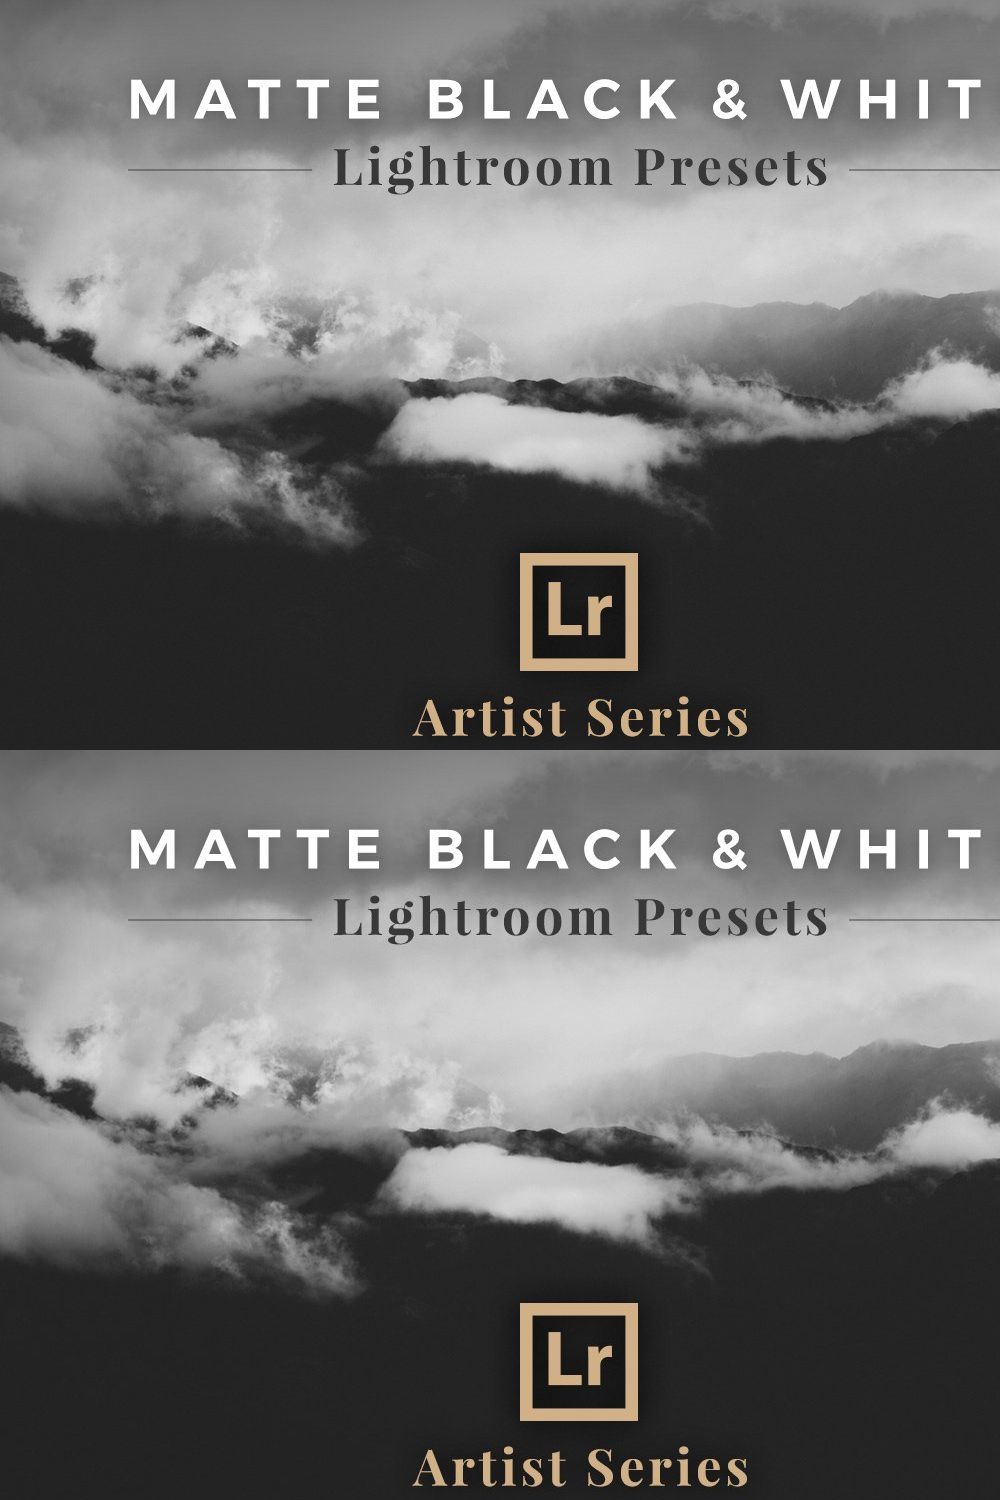 Matte Black &White Lightroom Presets pinterest preview image.